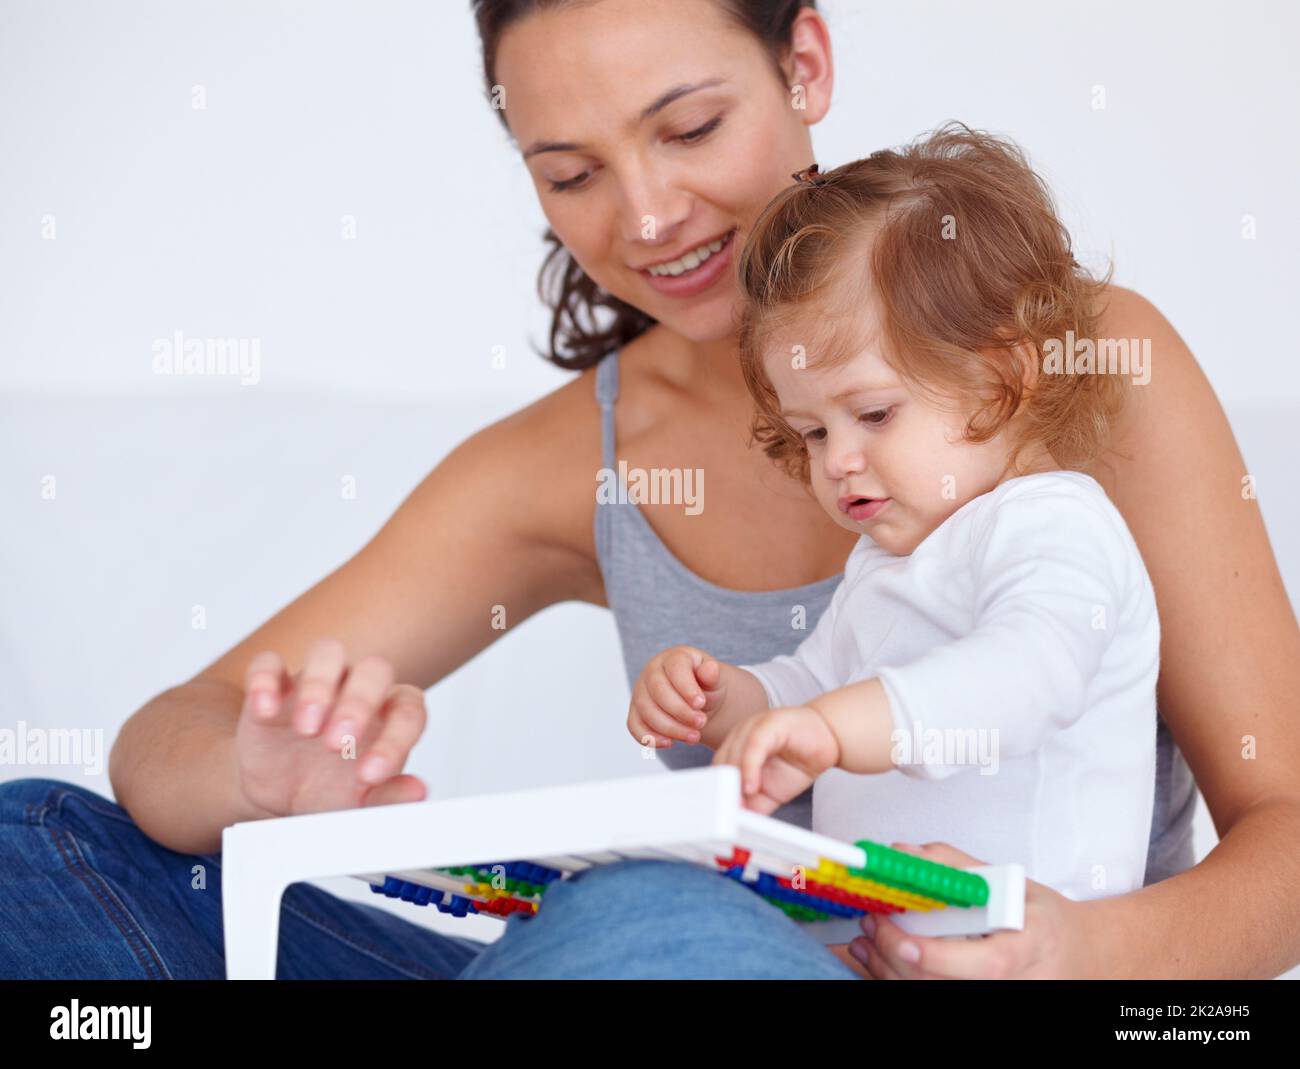 Apprendre est amusant. Une petite fille mignonne étant enseignée par sa mère comment utiliser un abacus. Banque D'Images